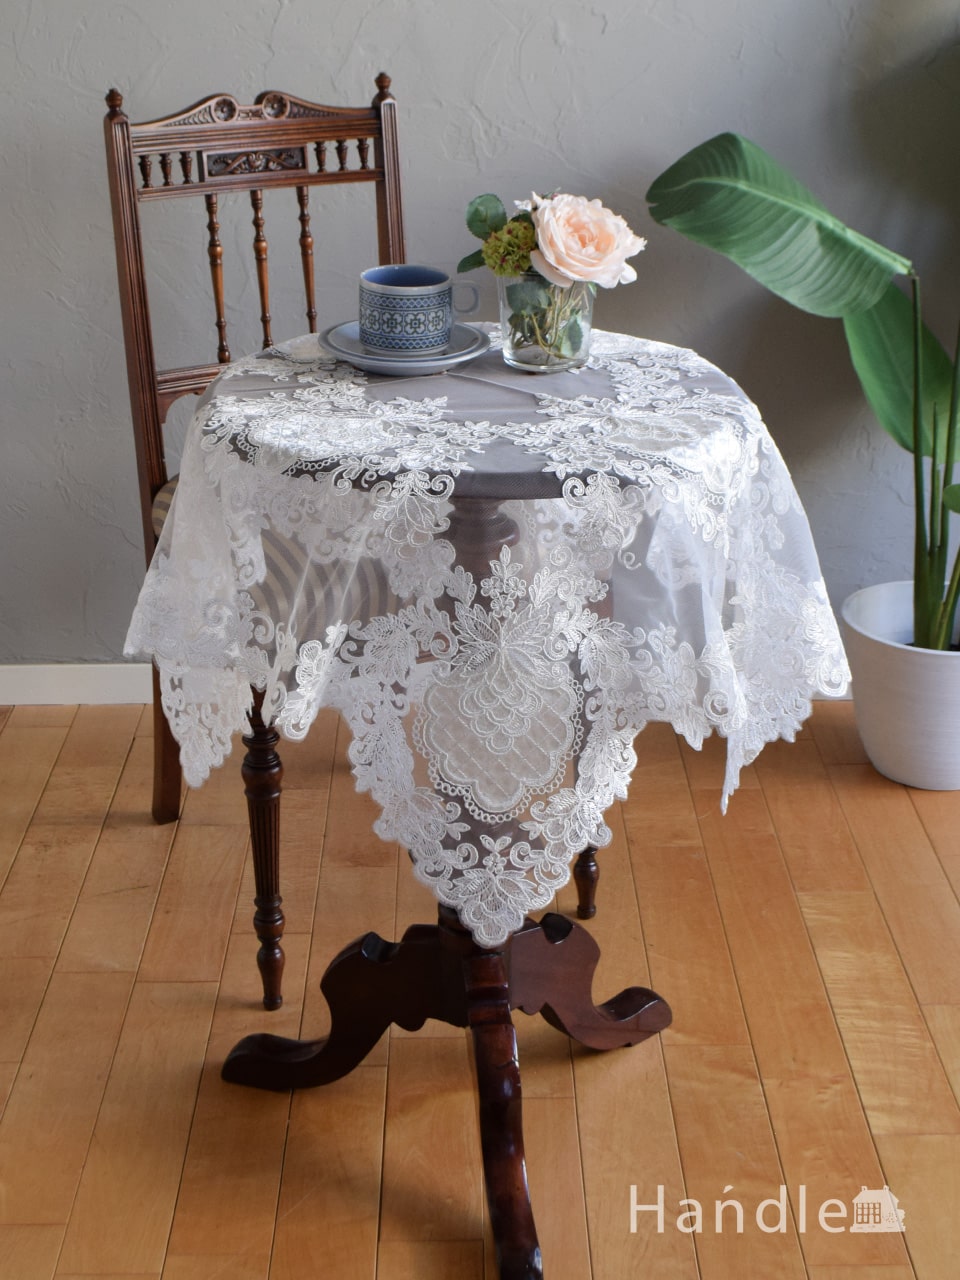 フランスアンティーク風のおしゃれなテーブルクロス、女子力高い刺繍の入ったテーブルマット  (n20-226)